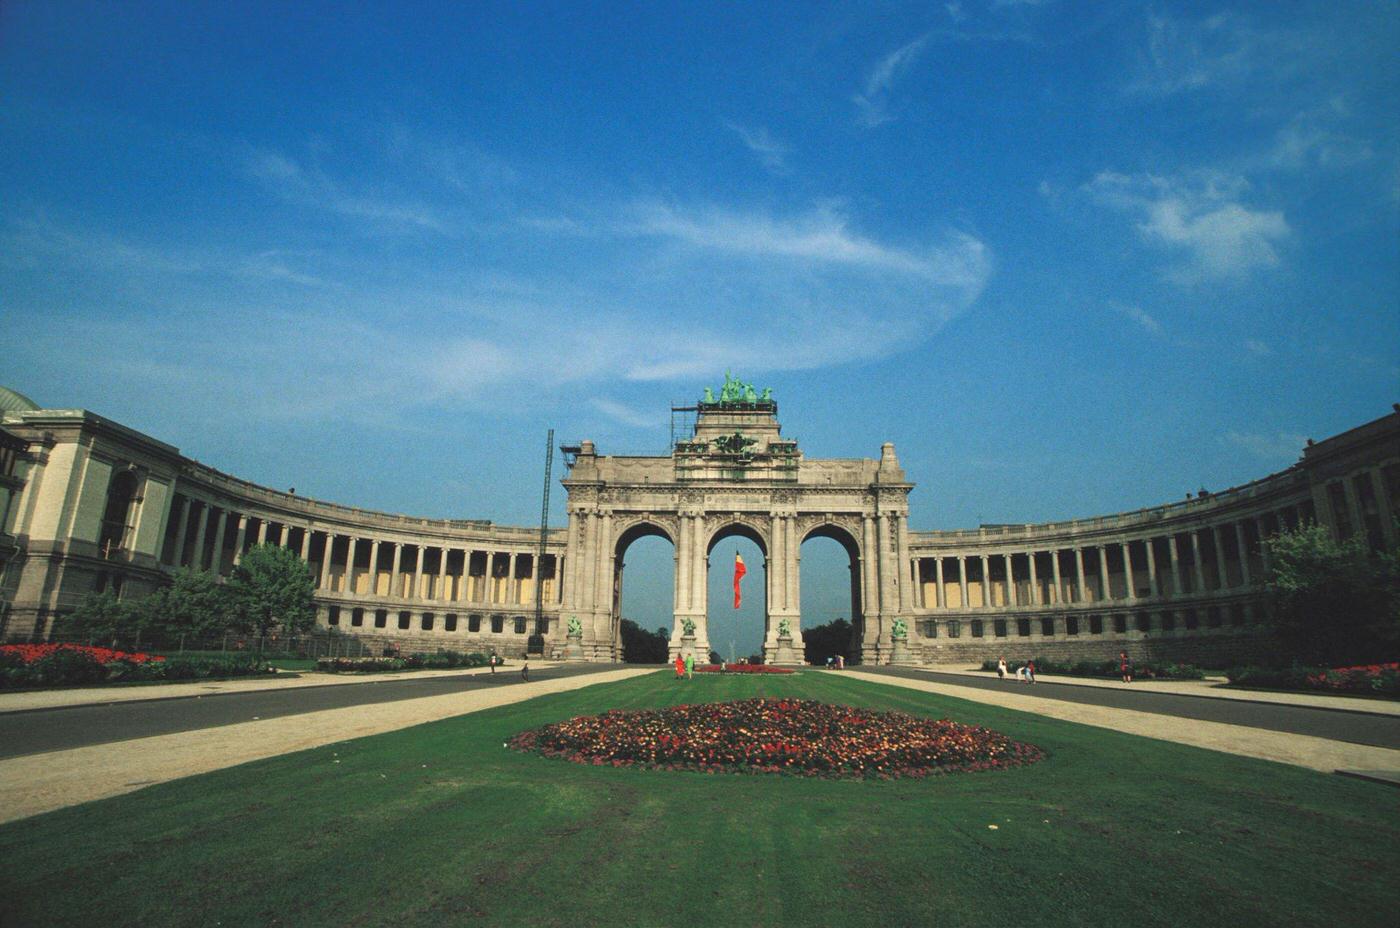 Parc du Cinquantenaire in Brussels, Belgium, 1986.